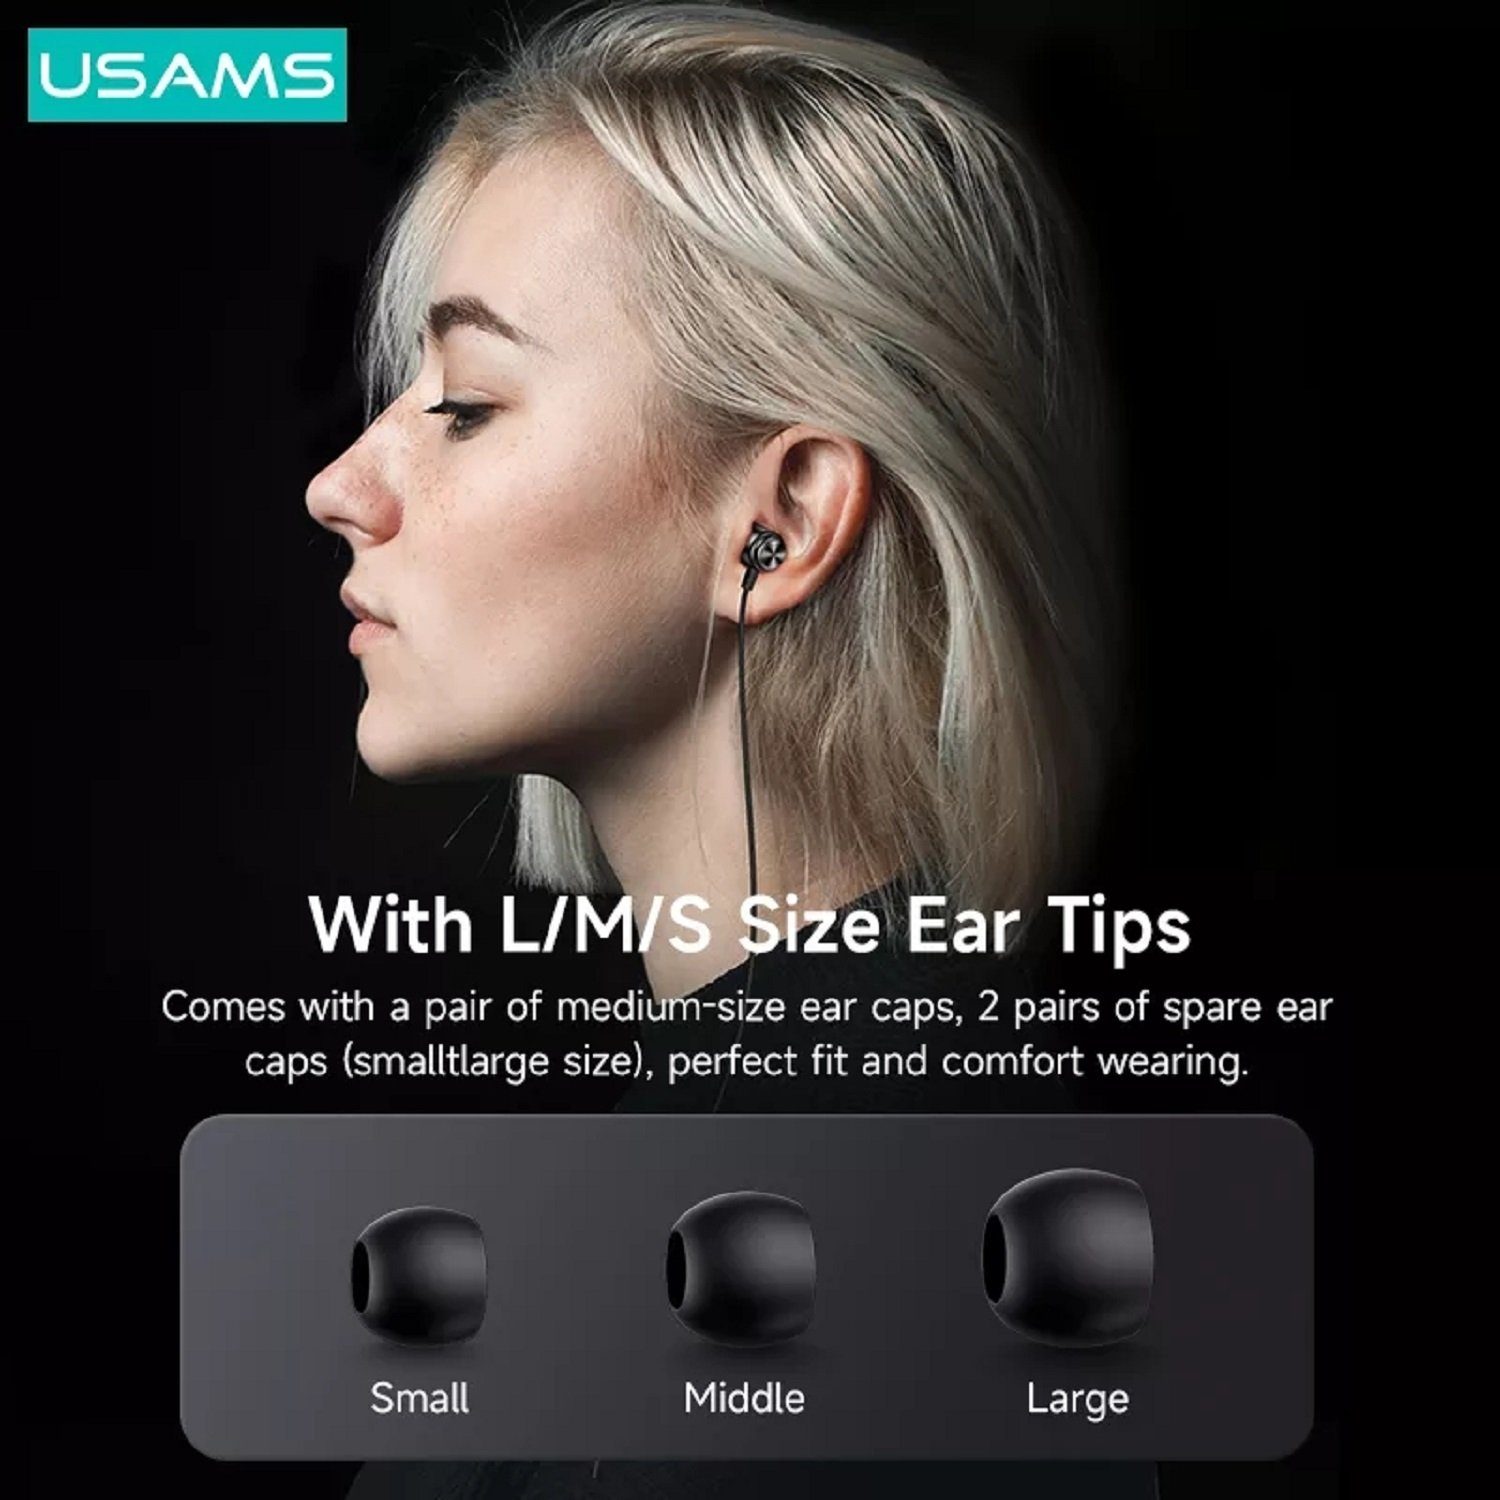 HiFi intergrierte Steuerung Ohrhörer 3,5mm, und (Kabelgebunden, Musik, Aux 1,2m, Stereo-Kopfhörer) USAMS Schwarz Bass 3,5mm für In-Ear-Kopfhörer, Stereo Anrufe EP-44 In-Ear-Kopfhörer Kopfhörerstecker mit